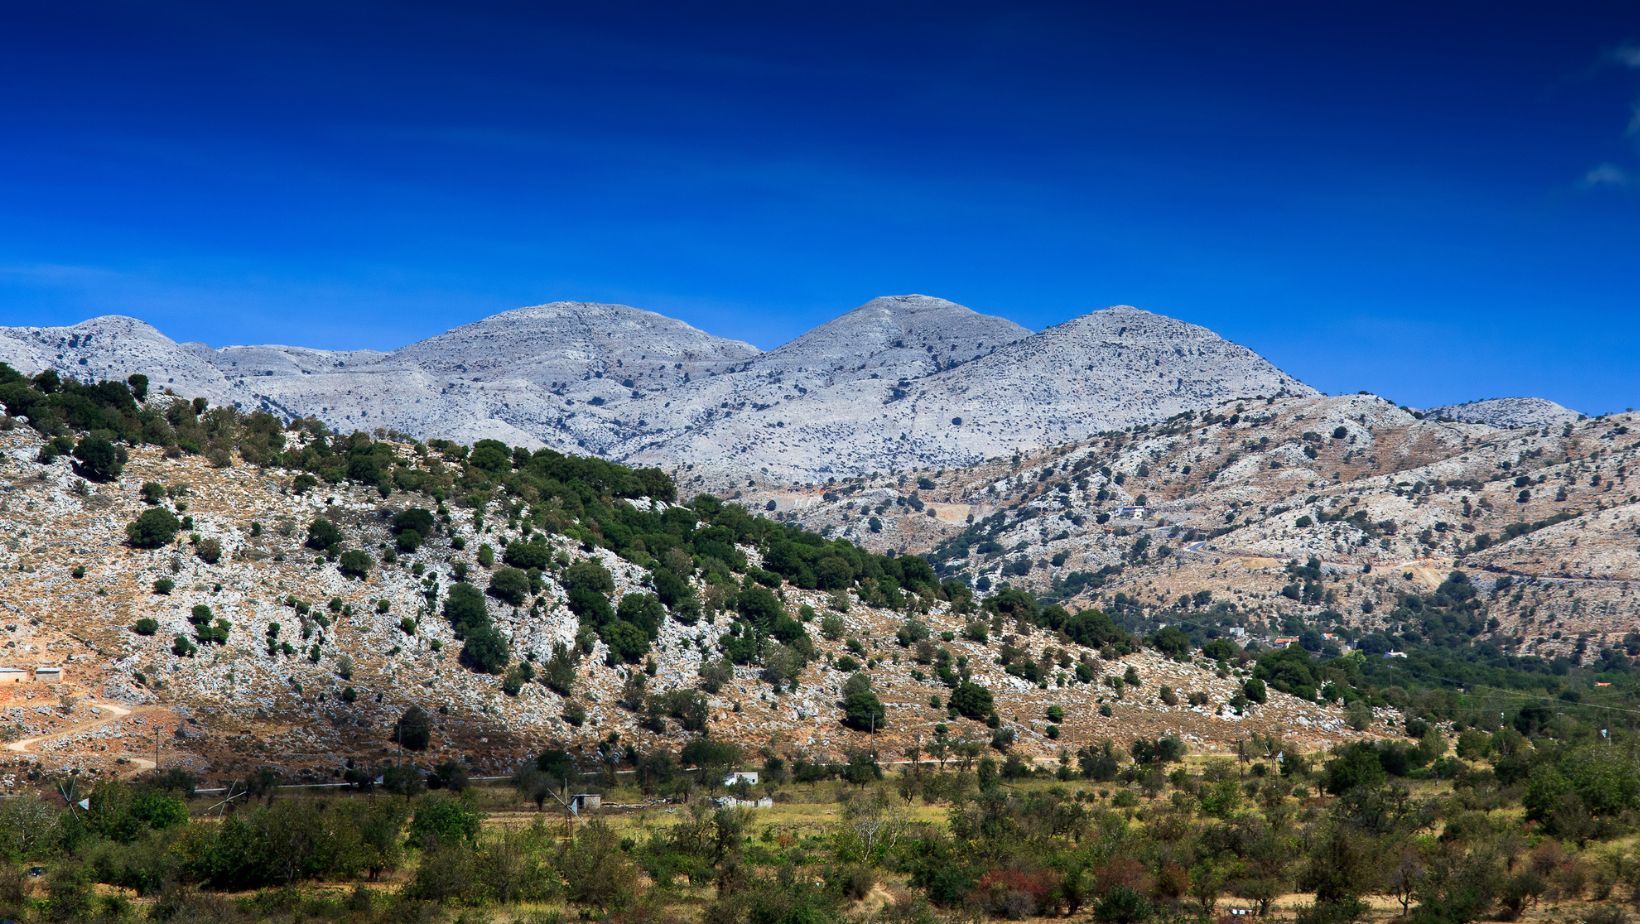 Dikti Mountains in Crete